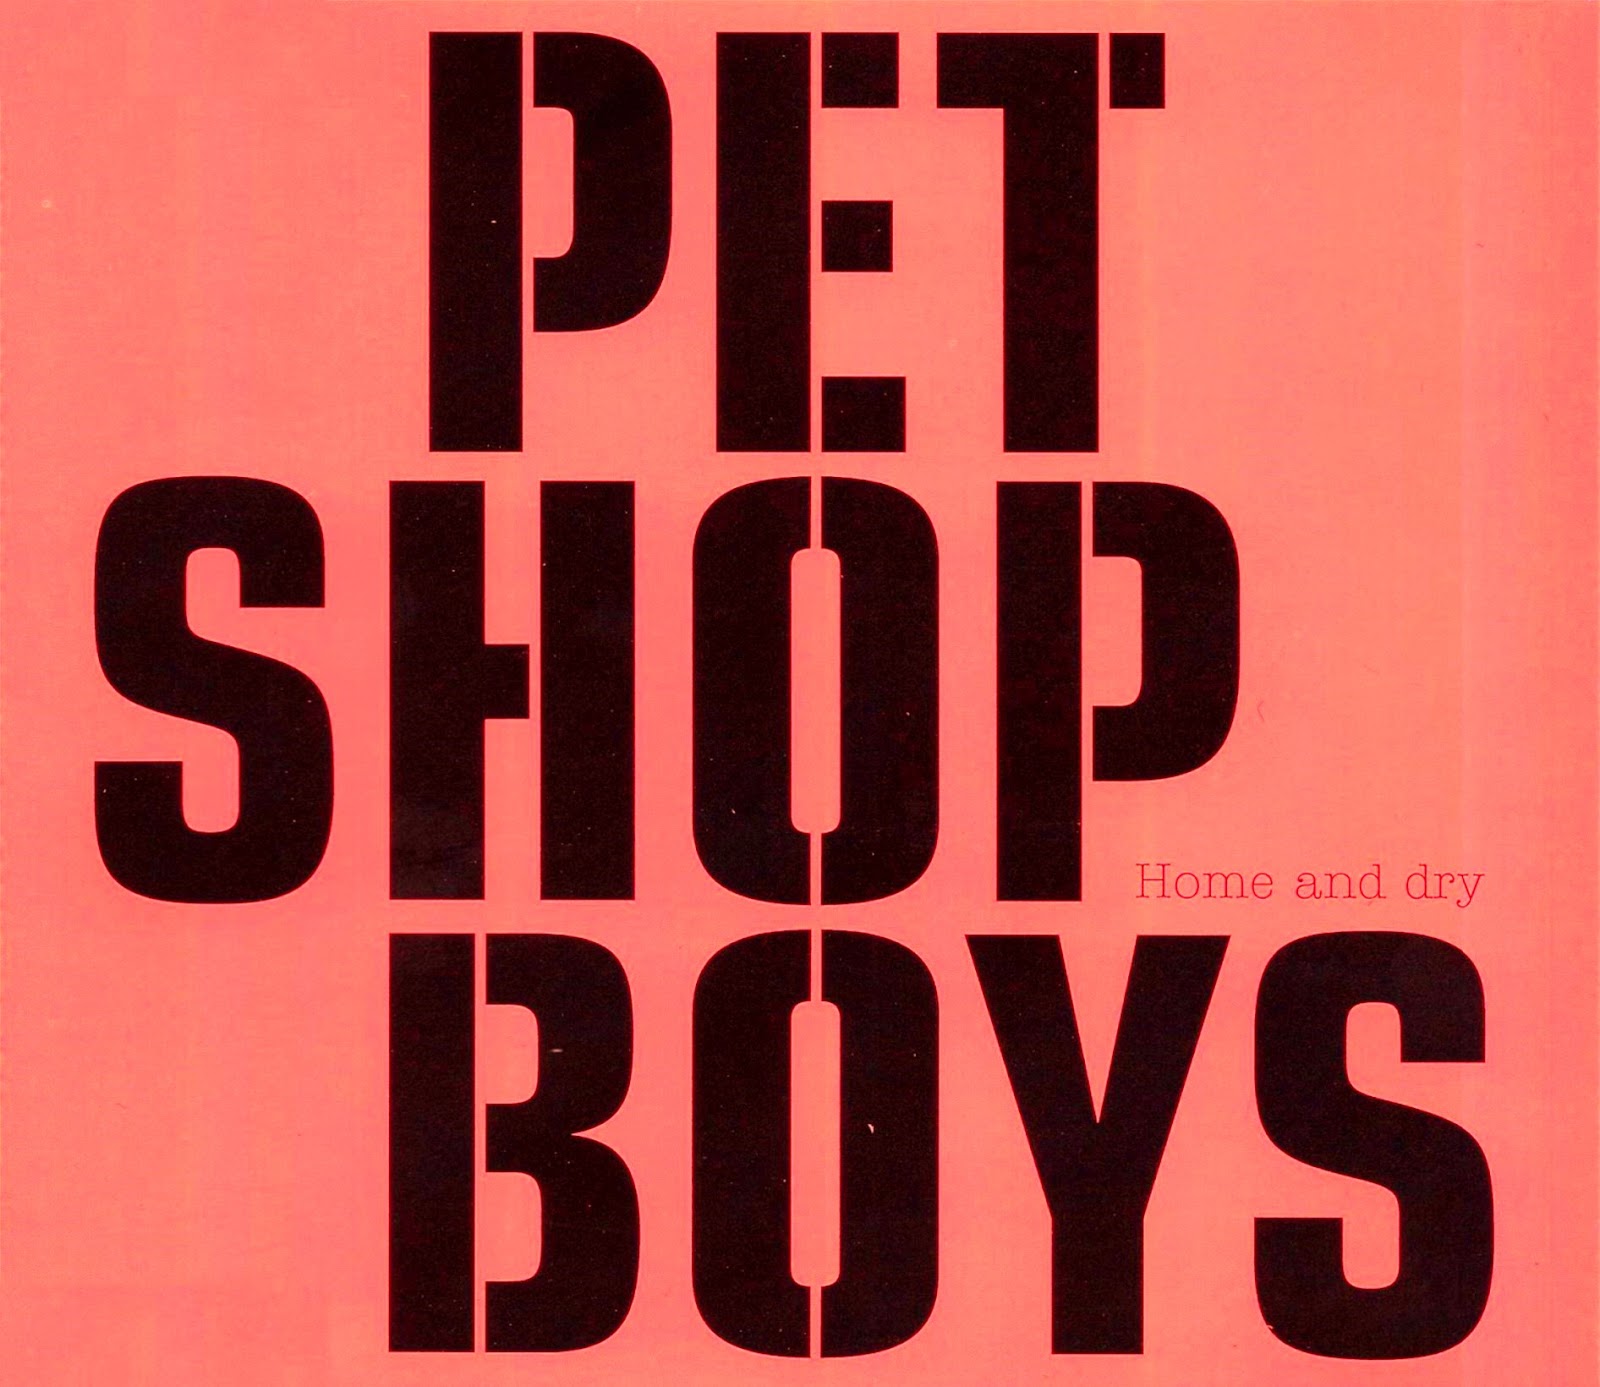 Pet shop boys на русском. Pet shop boys. Pet shop boys логотип. Pet shop boys аудиокассеты обложки альбомов. Pet shop boys обложка.